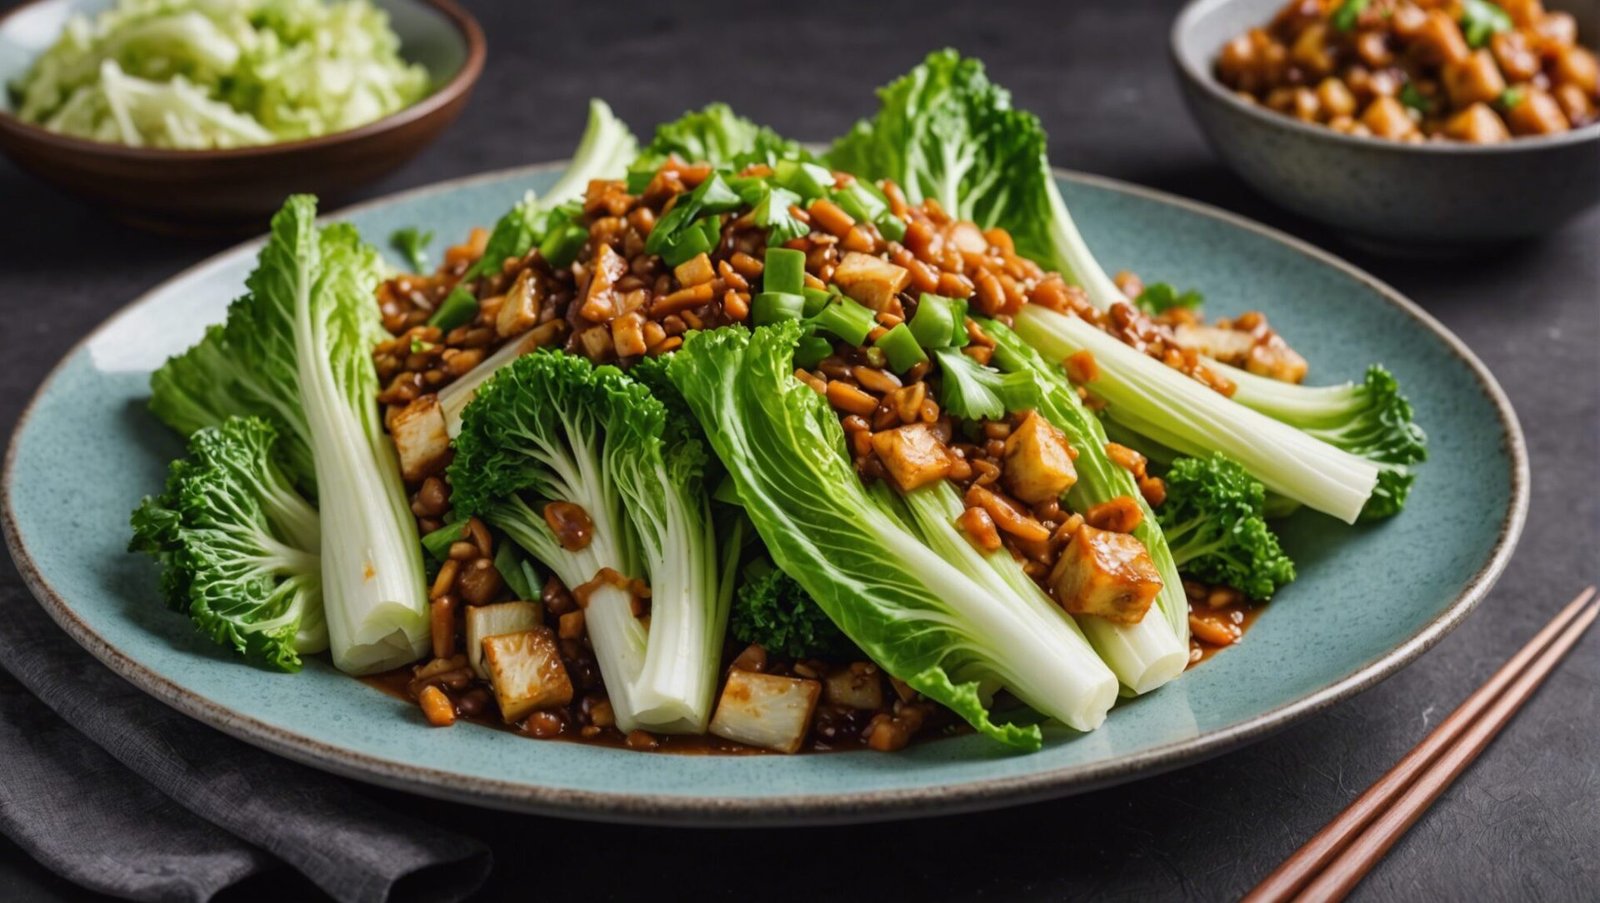 découvrez comment préparer un délicieux chou chinois vegan avec cette recette simple et savoureuse. profitez d'un repas sain et délicieux en suivant nos conseils pratiques.